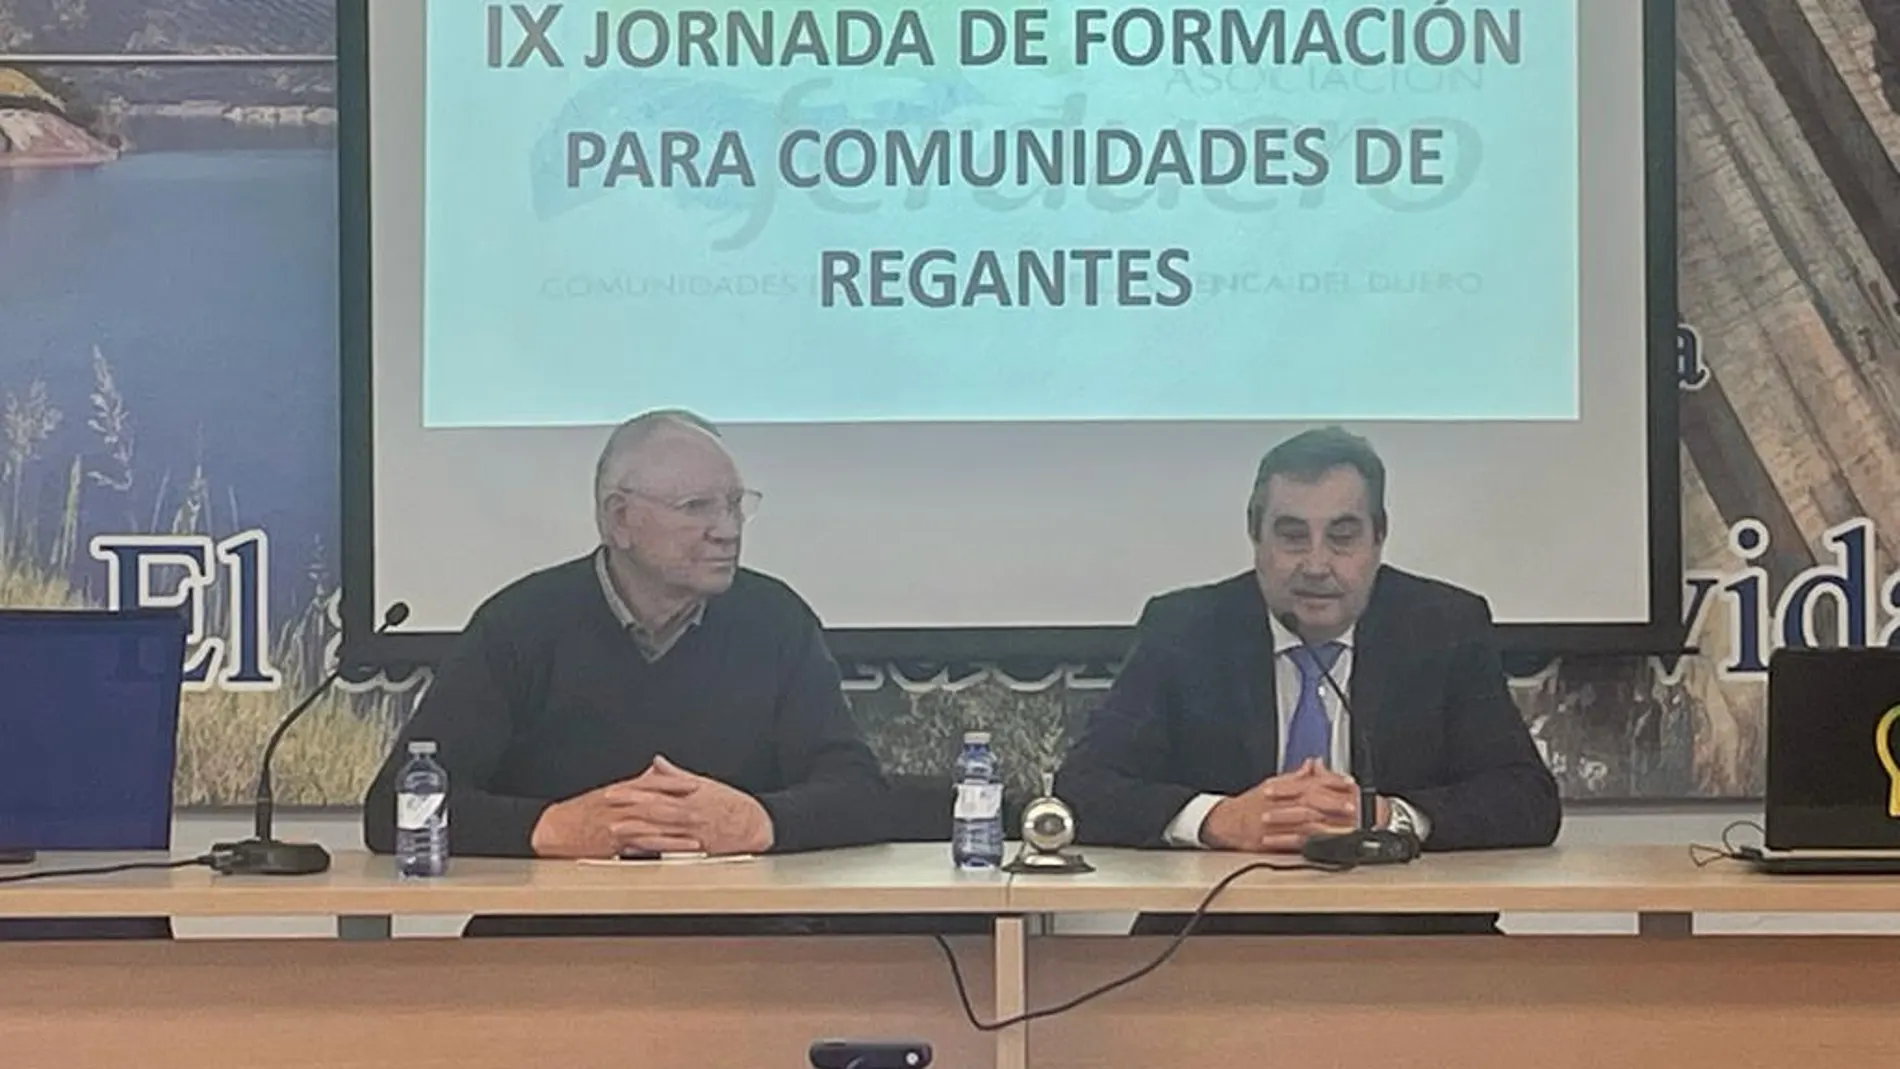 El director general del Itacyl, Rafael Sáez, clausura la IX Jornada de formación de las comunidades de regantes organizada por Ferduero